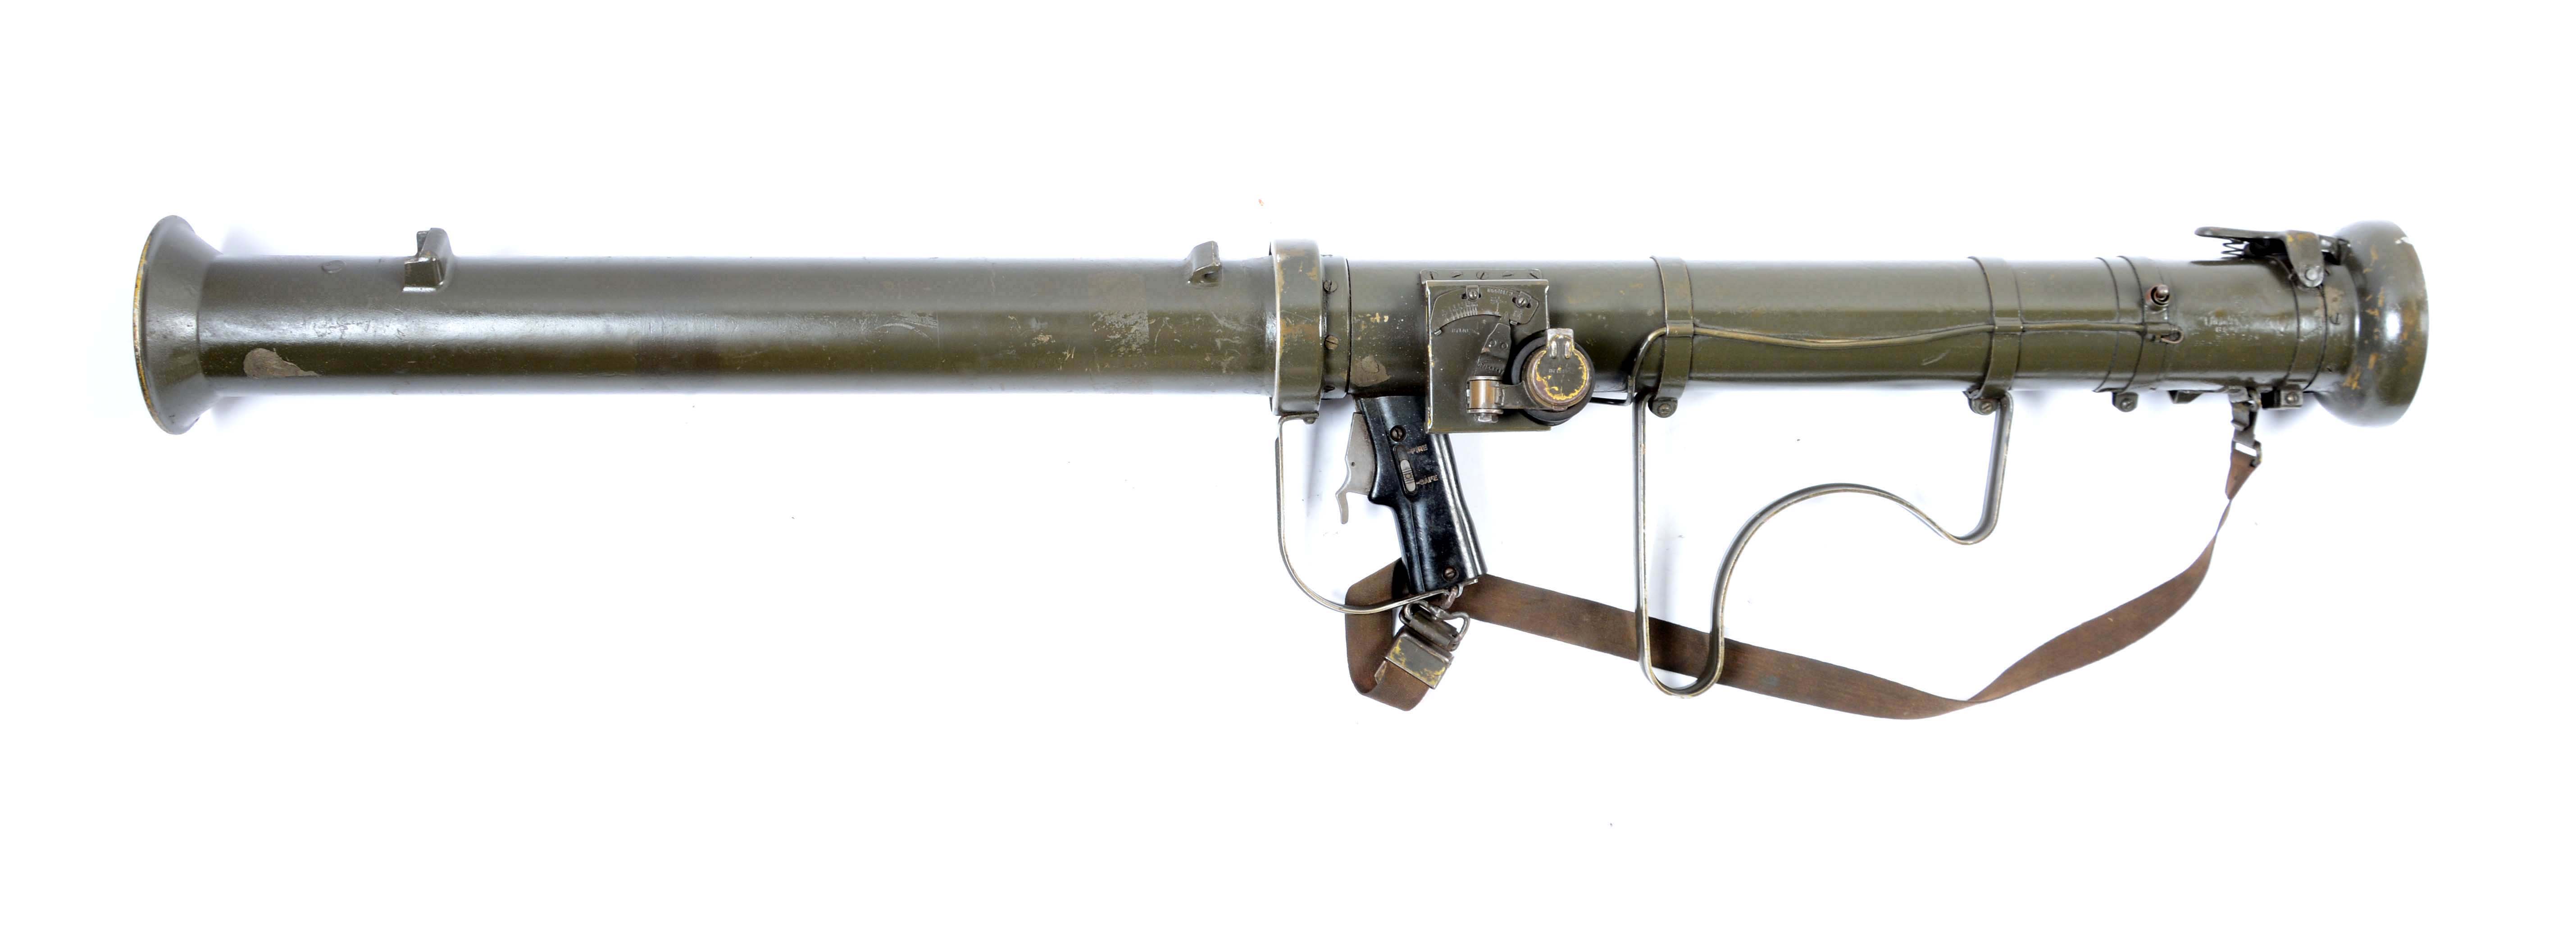 Как называется гранатомет. Базука m20. Базука м 20. M20 super Bazooka. Гранатомет базука.